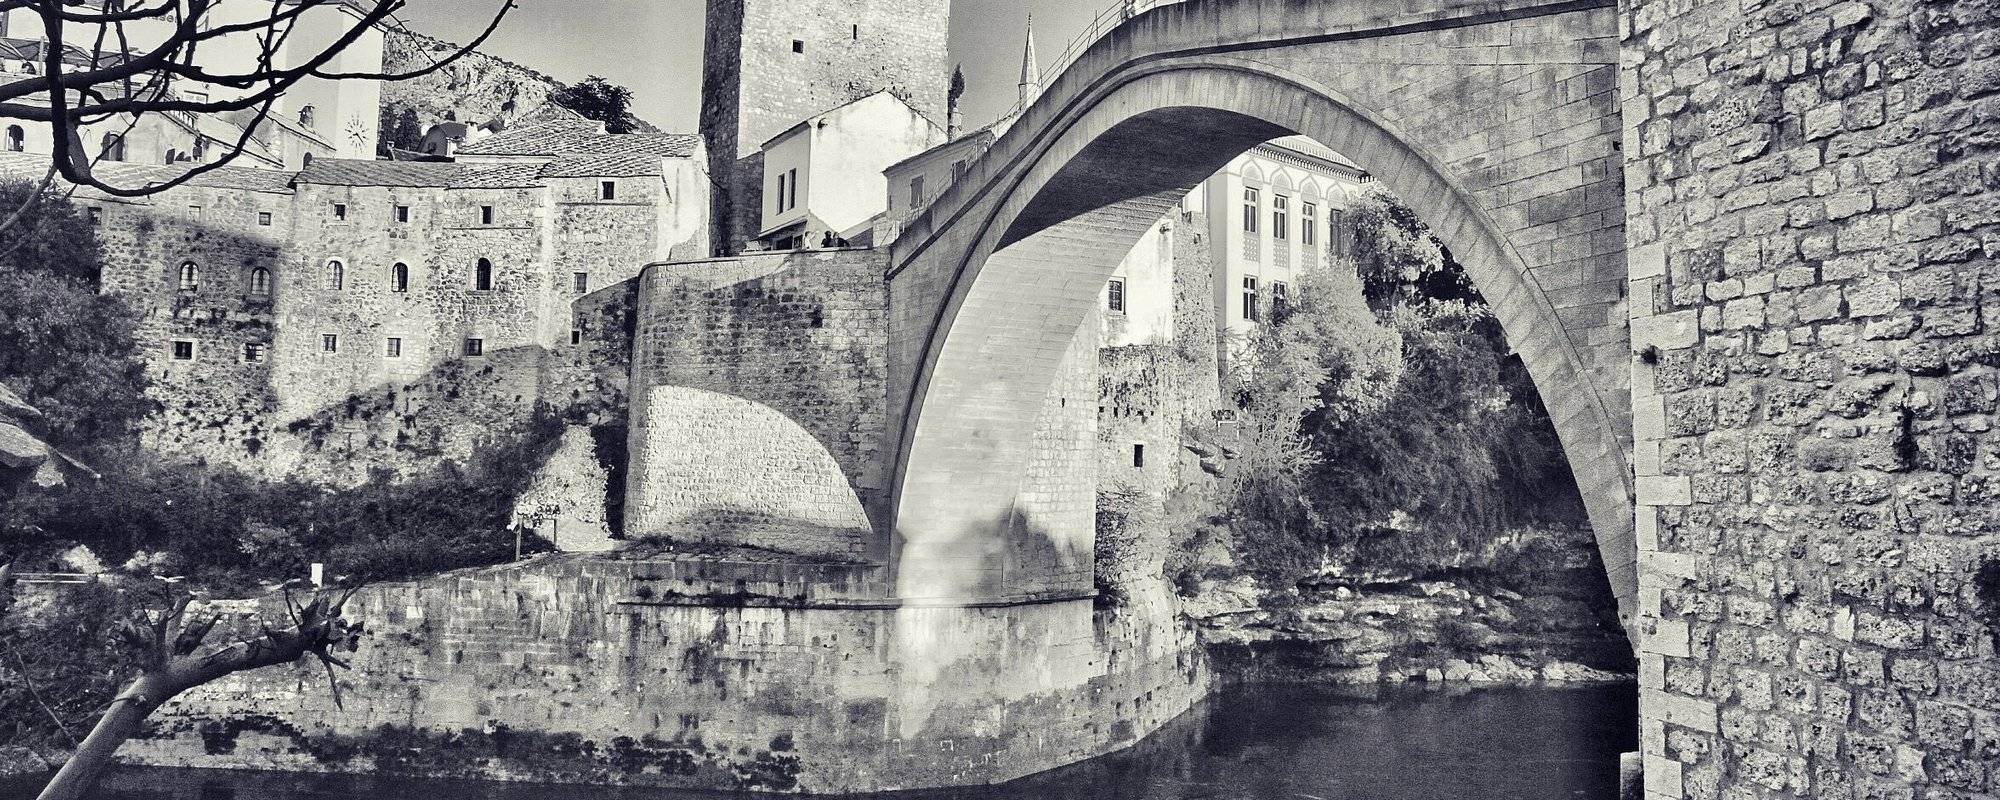 #55 The Star Bridge - Stari Most in Bosnia 🇧🇦 波黑的明星老桥